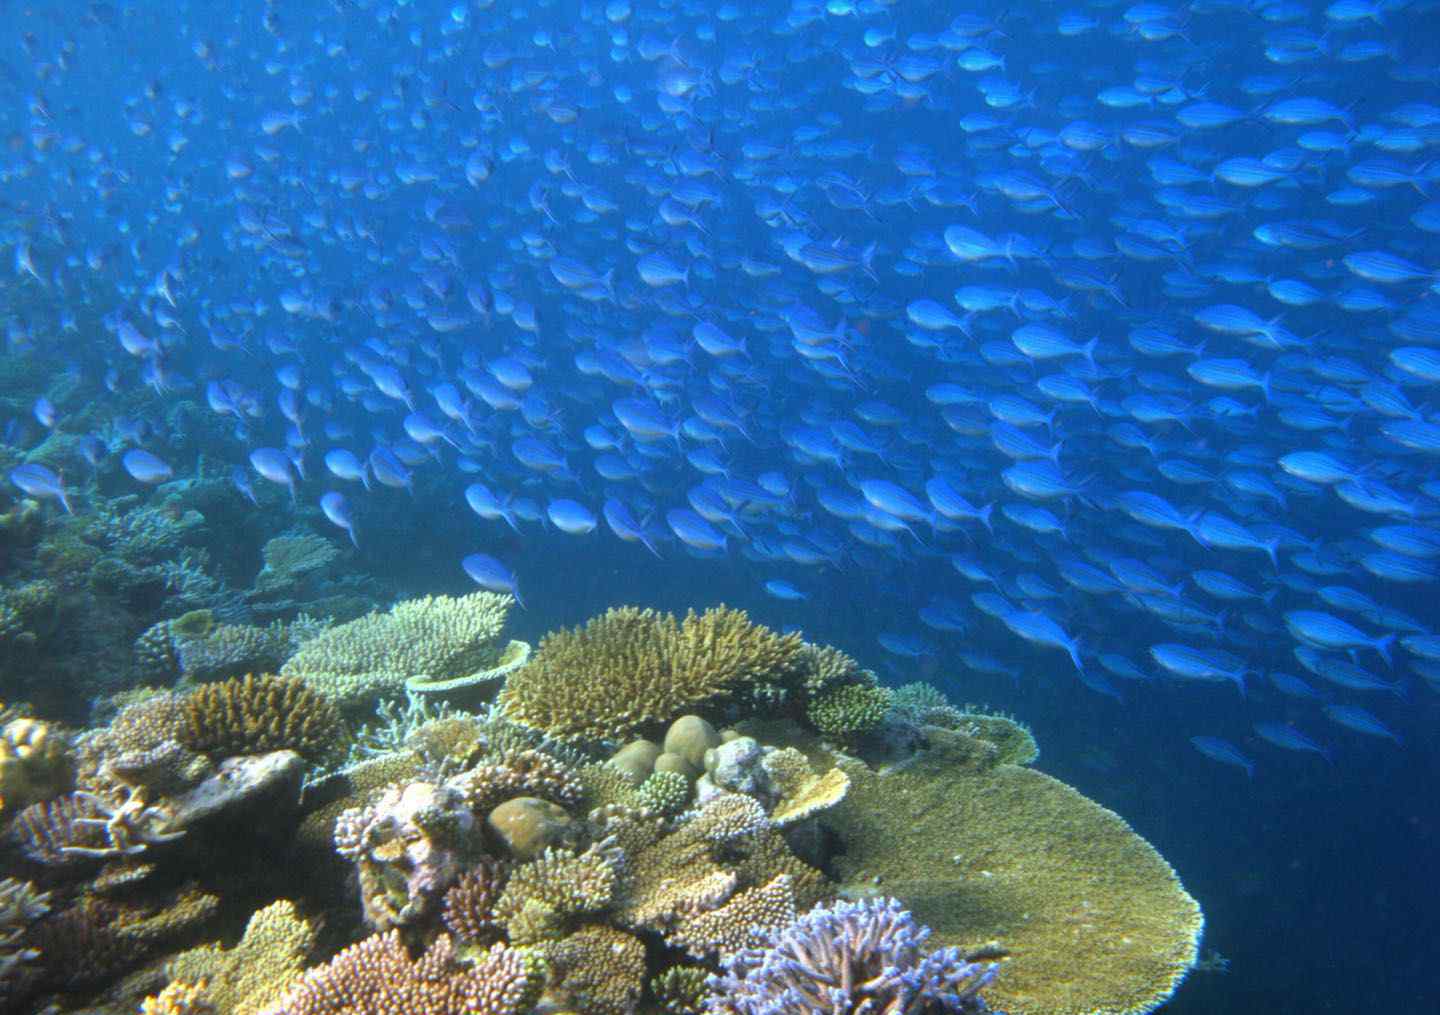 海岛度假潜水“海底交规”多 严禁游客带走沙子、贝壳